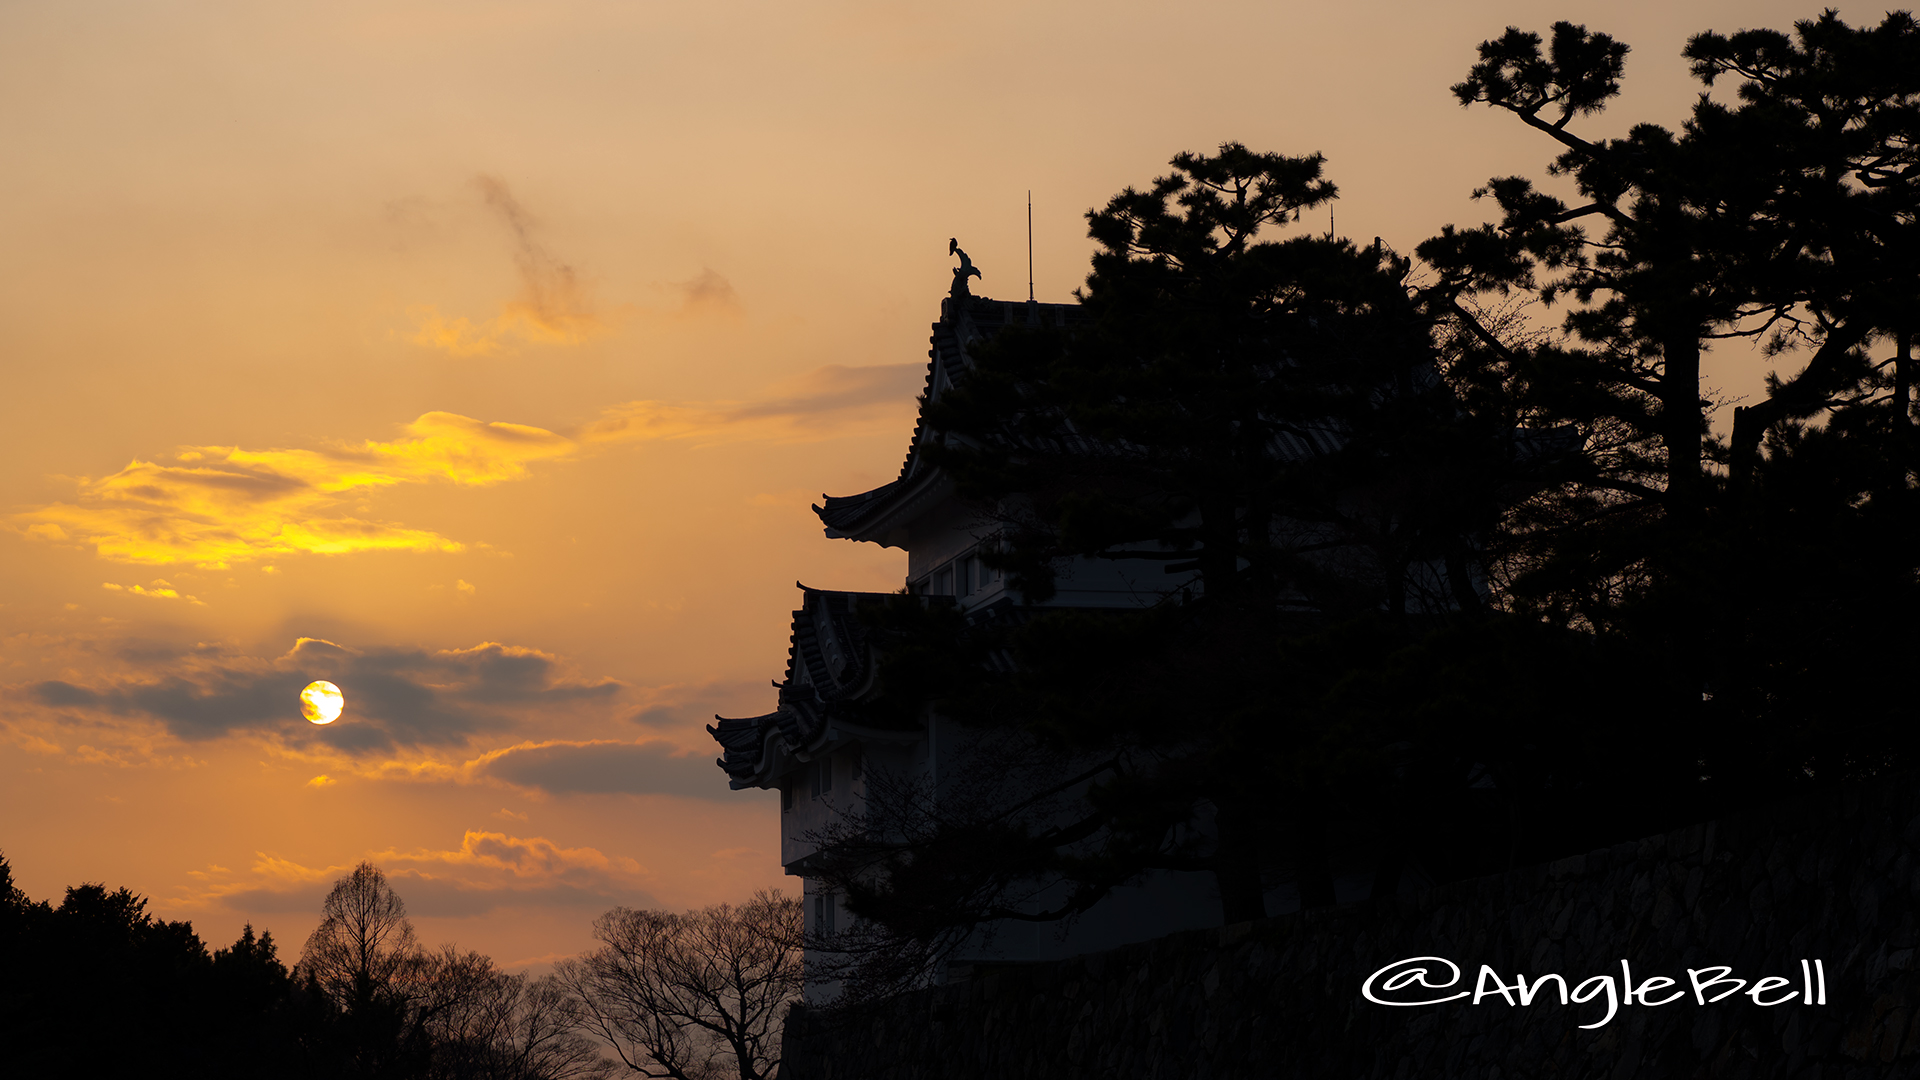 名古屋城 西南隅櫓と夕景